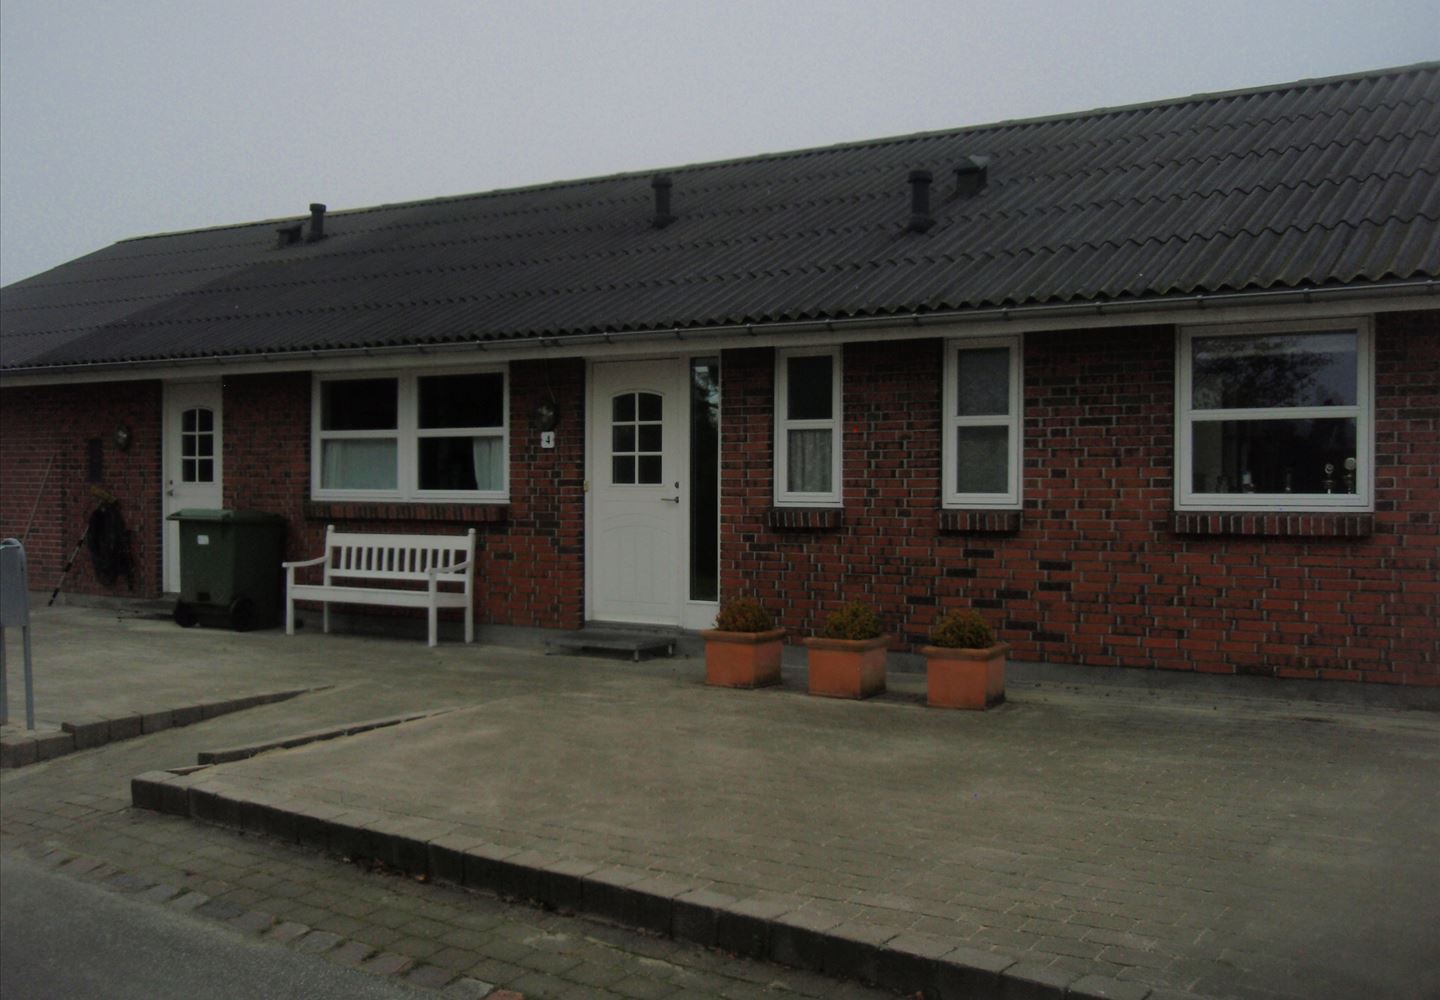 Birkehaven 4, 8520 Lystrup